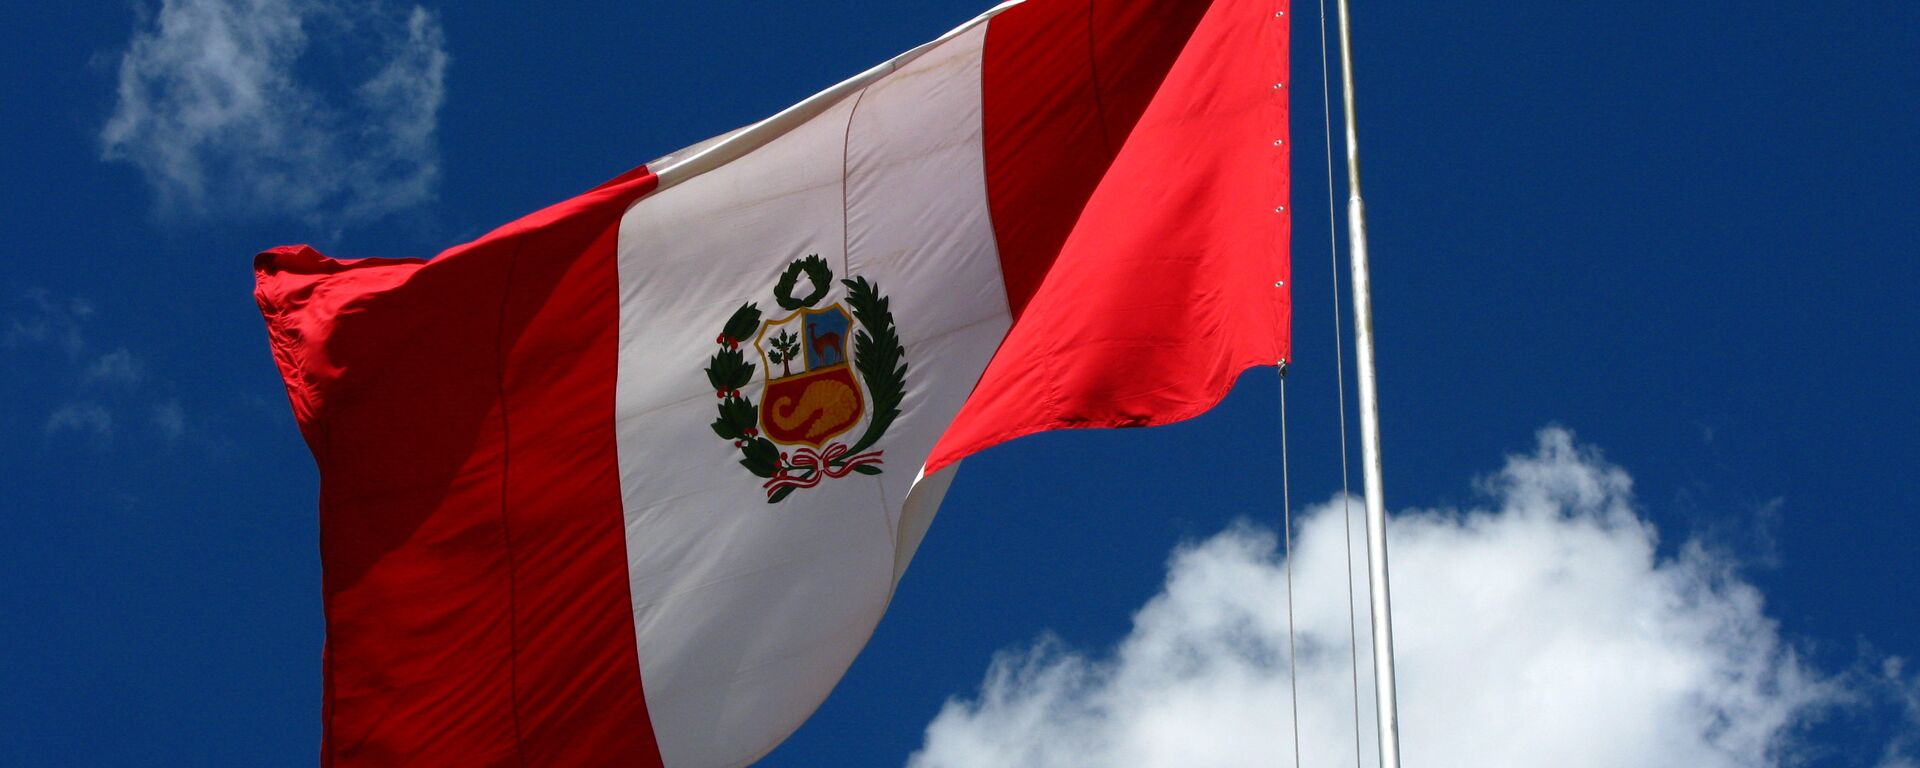 Bandera del Perú - Sputnik Mundo, 1920, 08.02.2021